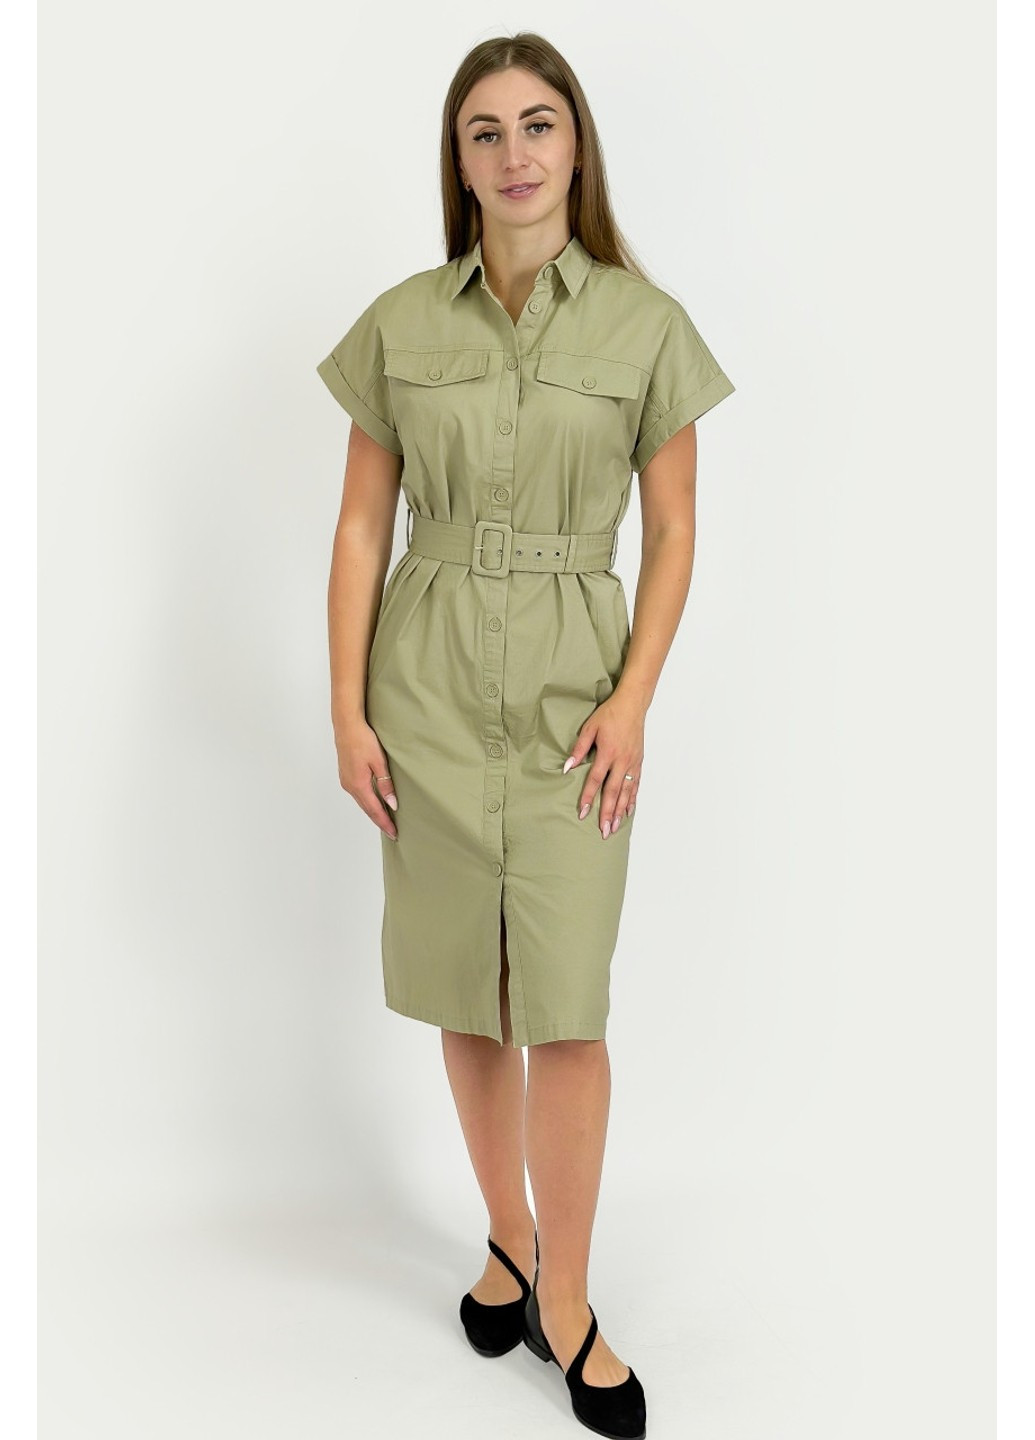 Зеленое повседневный платье-рубашка fsc110130-920 рубашка Finn Flare однотонное